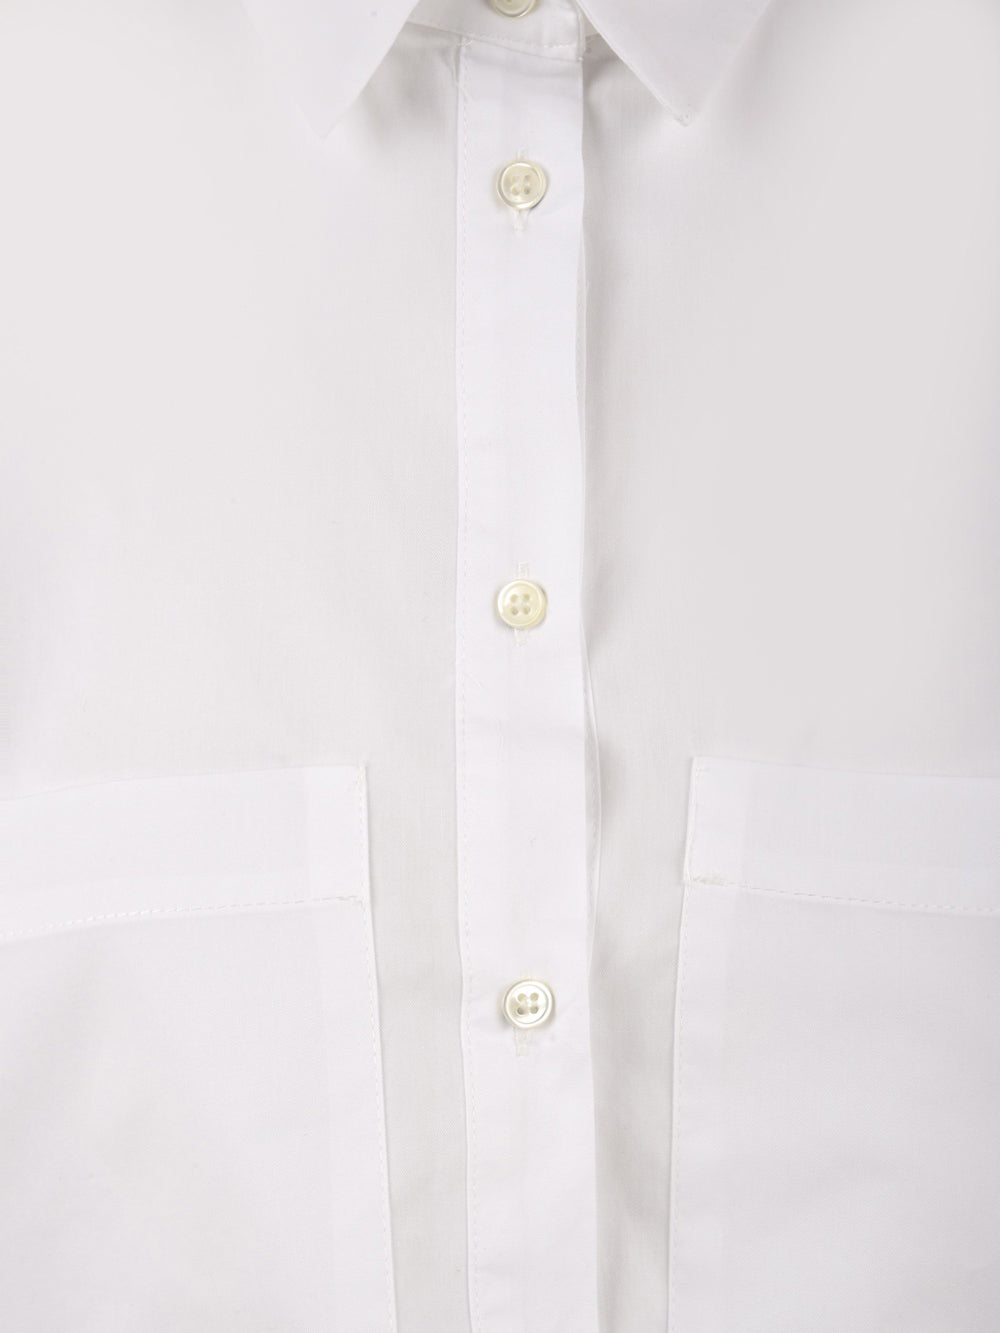 Camicia Donna cropped bianca, Solotre, bottoni